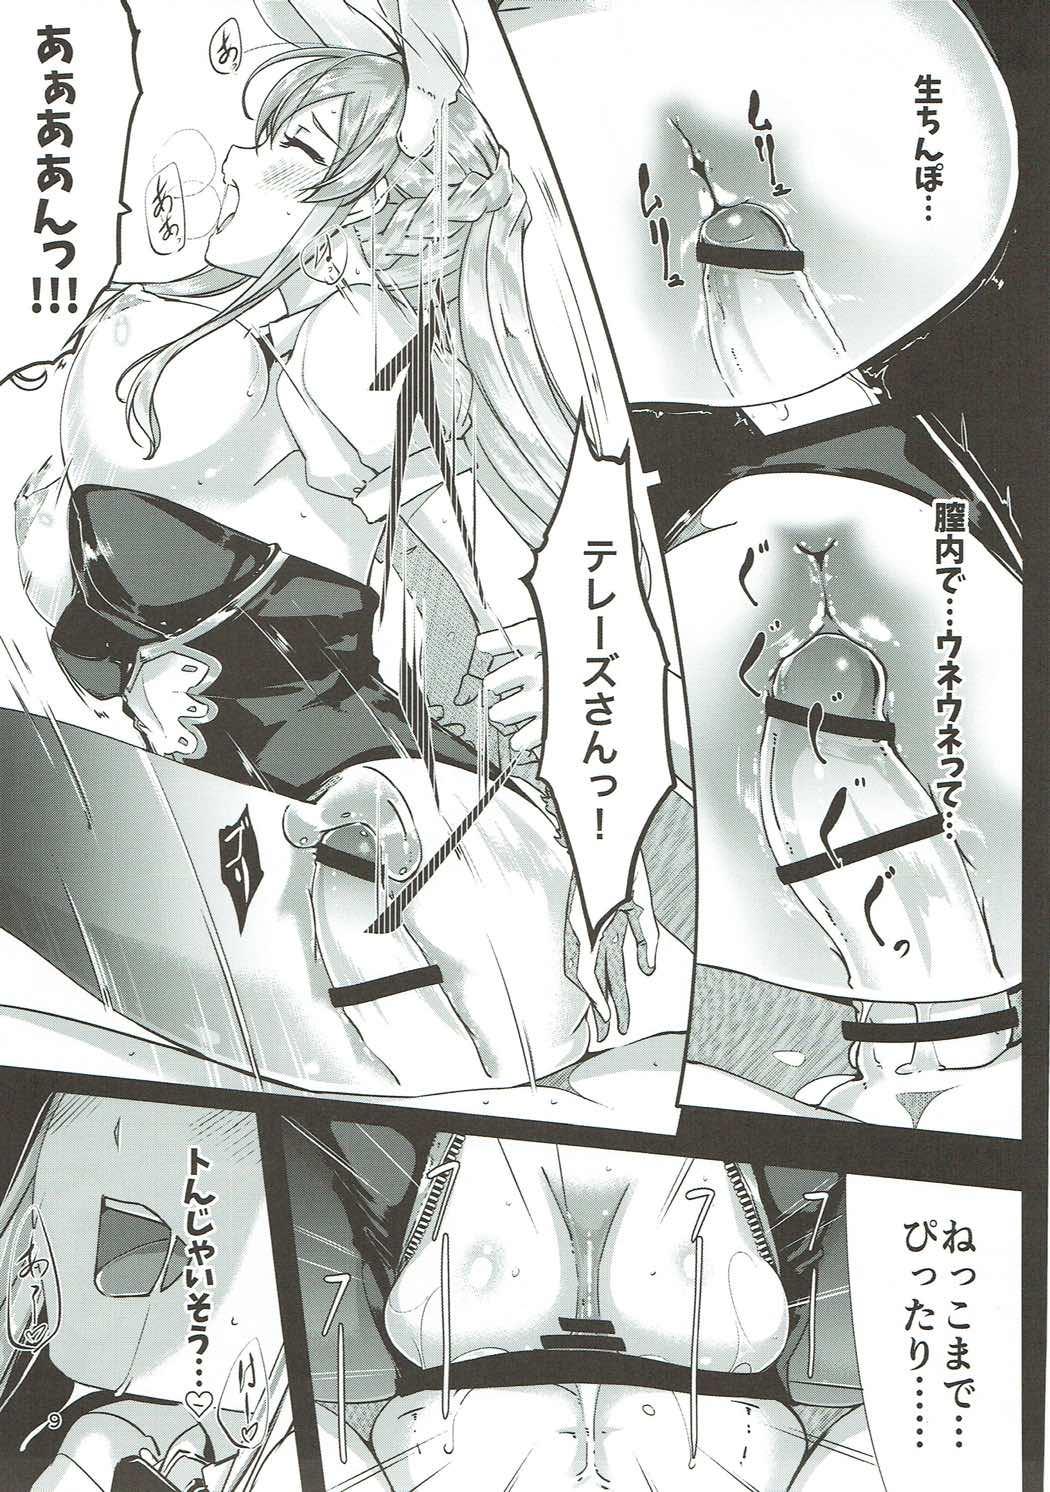 Pornstar Ecchi na Usagi wa Suki desu ka? - Granblue fantasy Tinder - Page 10